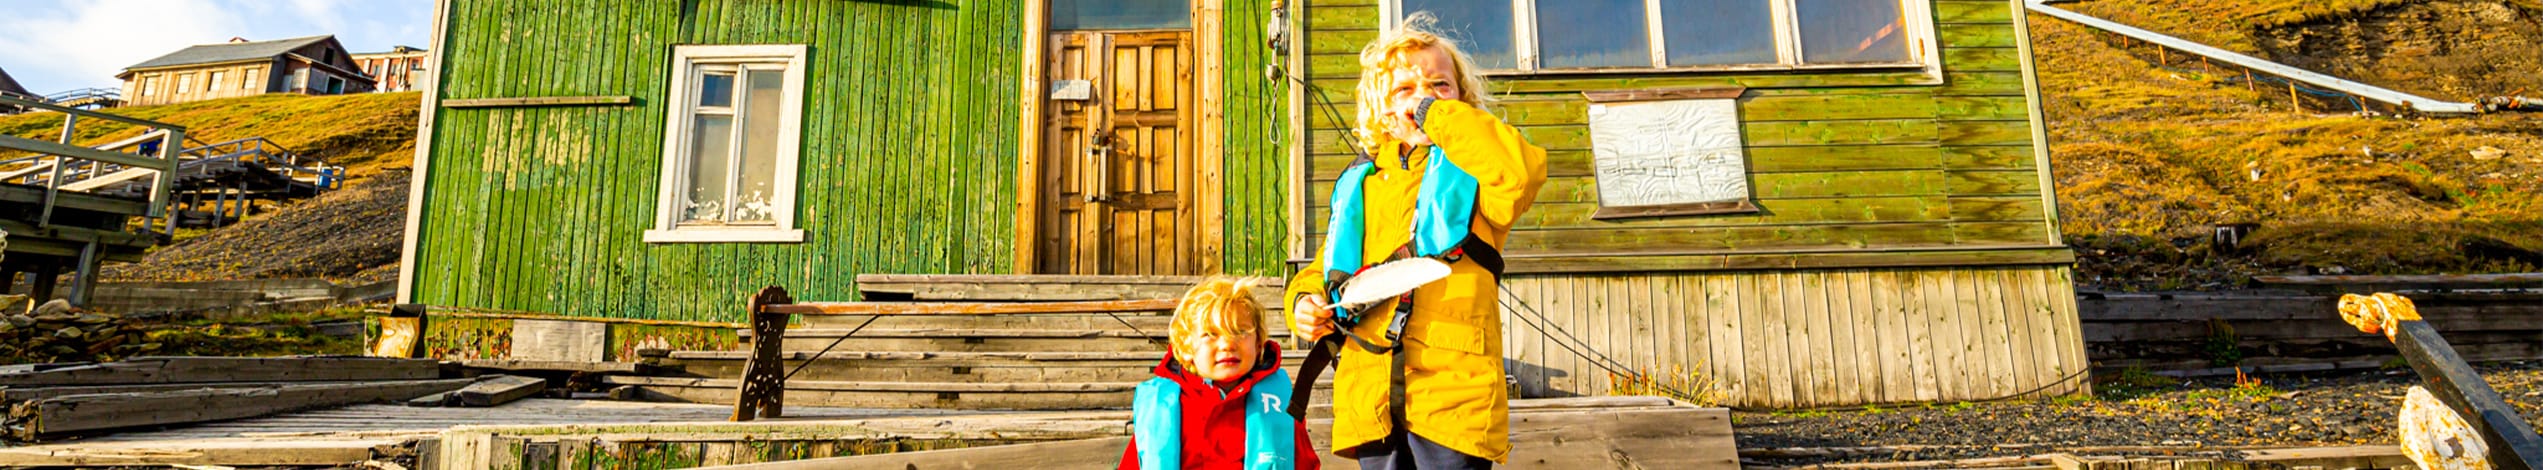 Familieeventyr på Svalbard